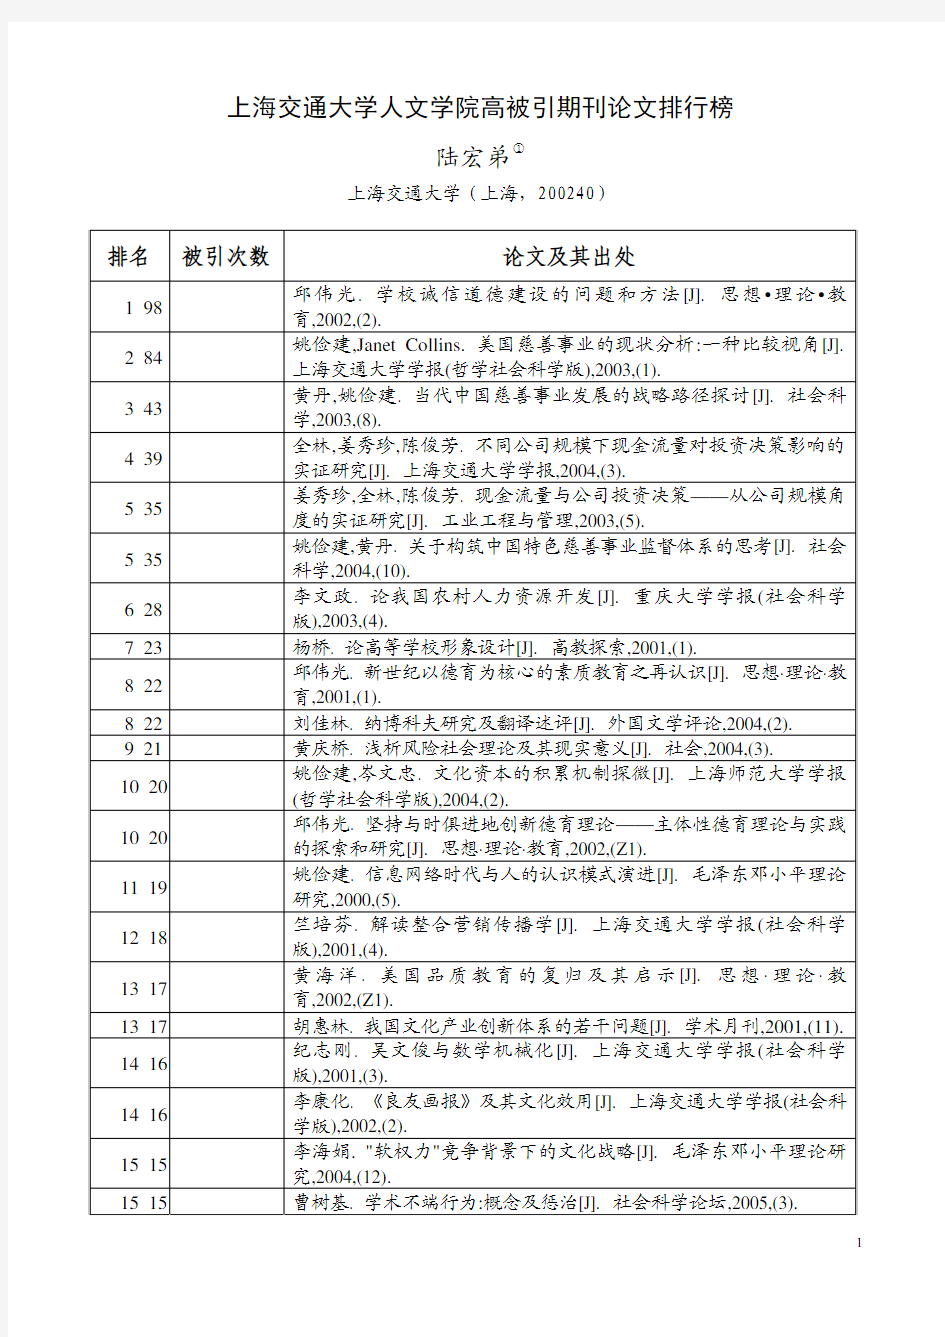 上海交通大学人文学院高被引期刊论文排行榜 陆宏弟